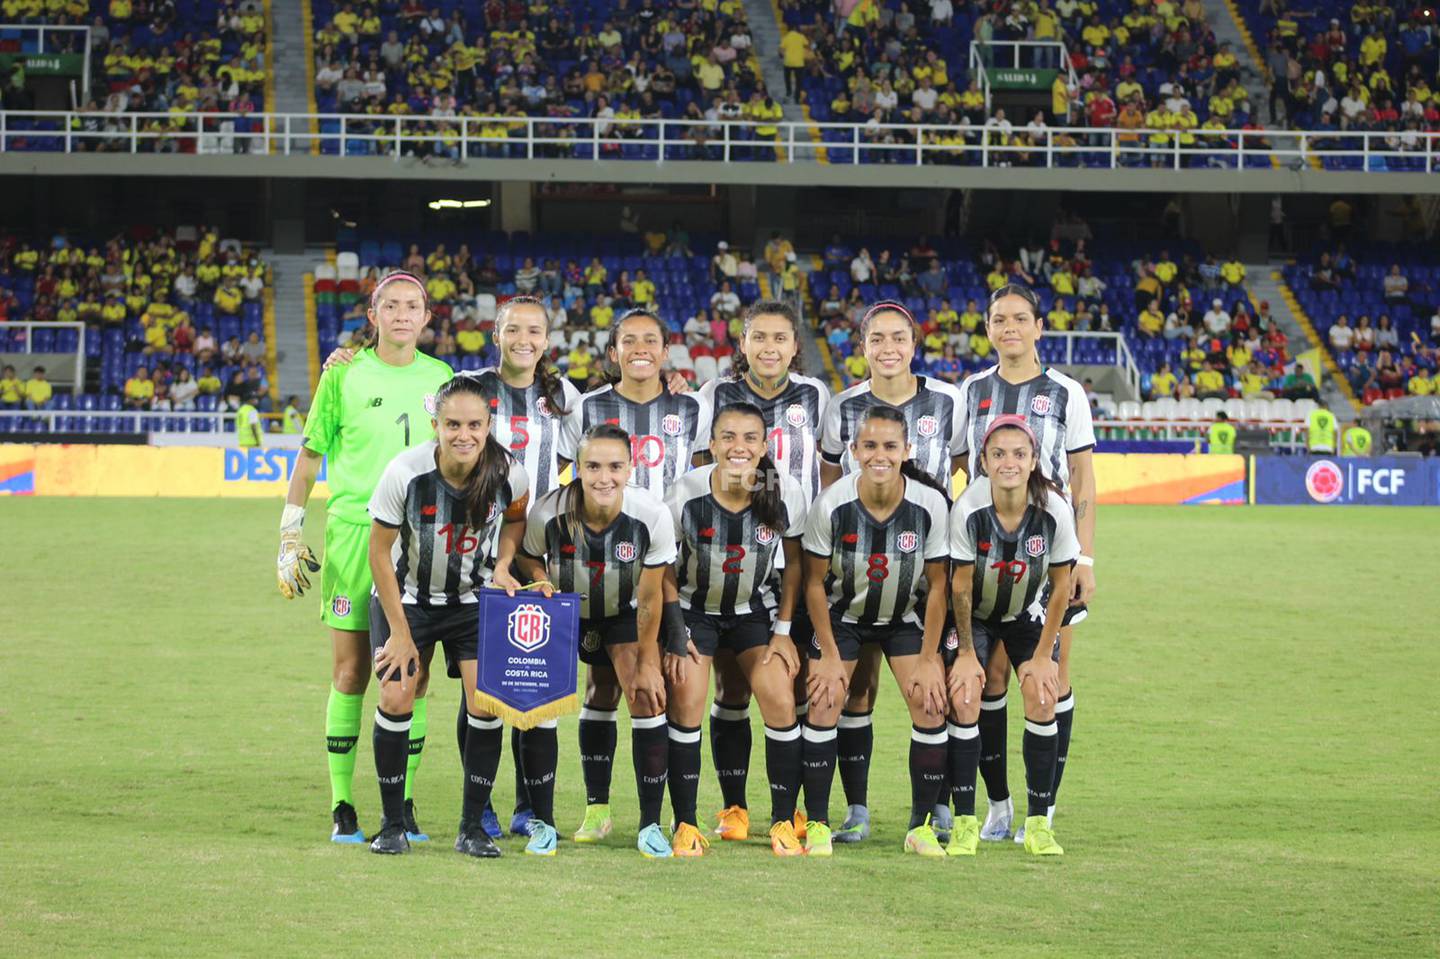 En su segundo encuentro amistoso por tierras suramericanas, este martes 6 de setiembre, la Selección Mayor Femenina de Costa Rica perdió ante Colombia con marcador de 2-0.